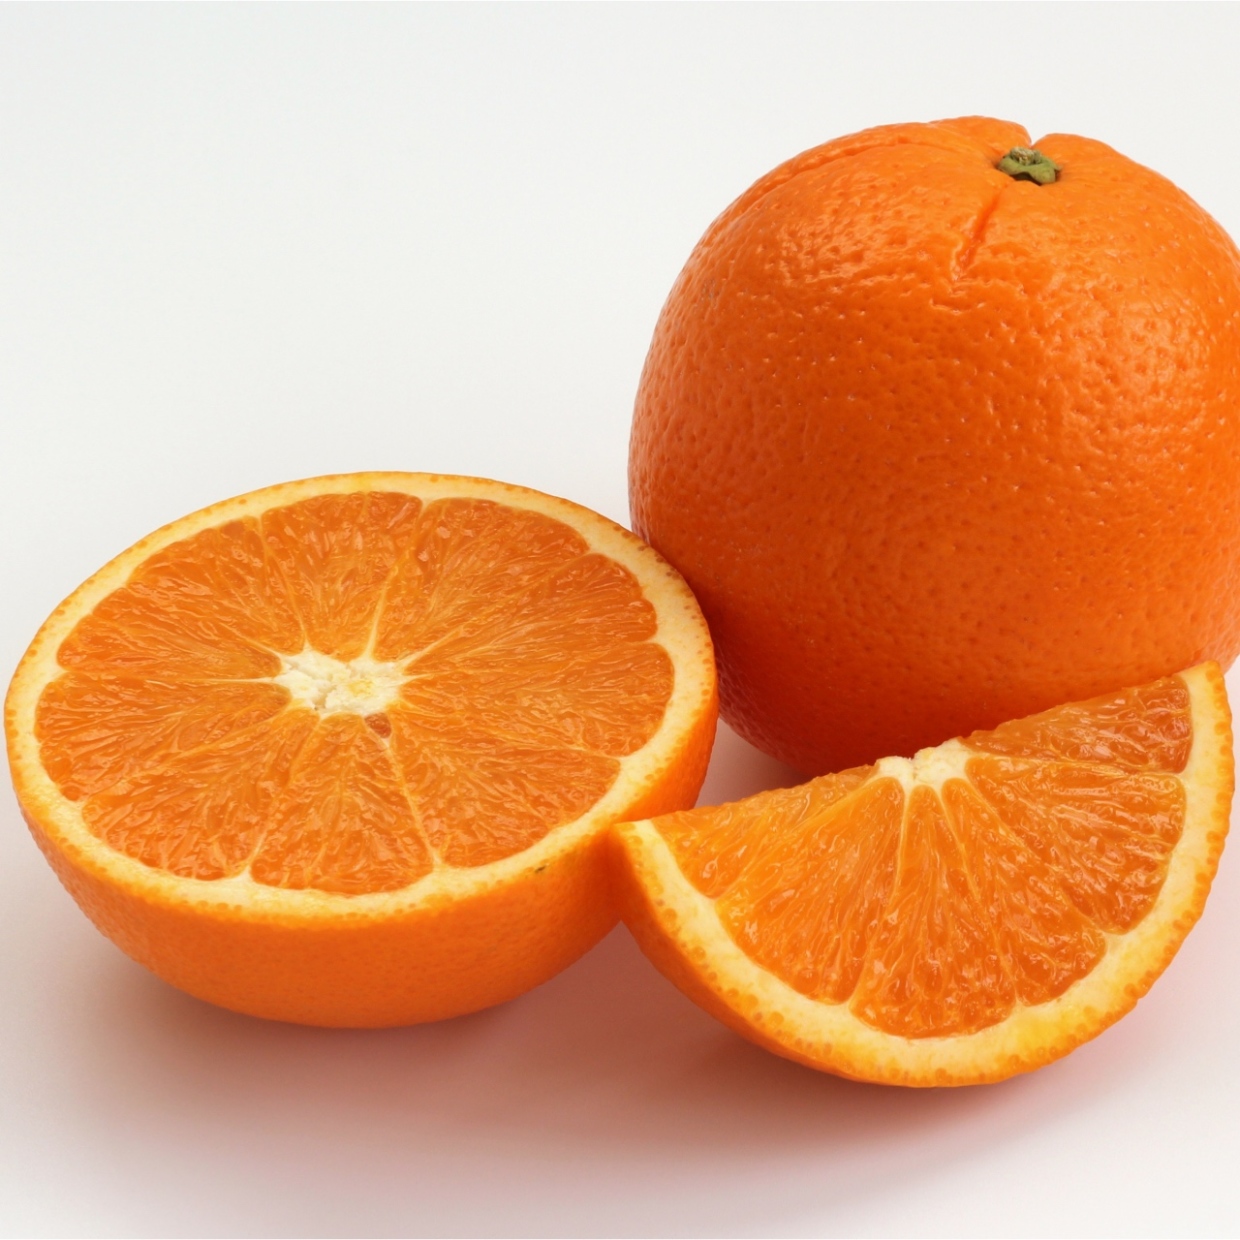  「オレンジ」 